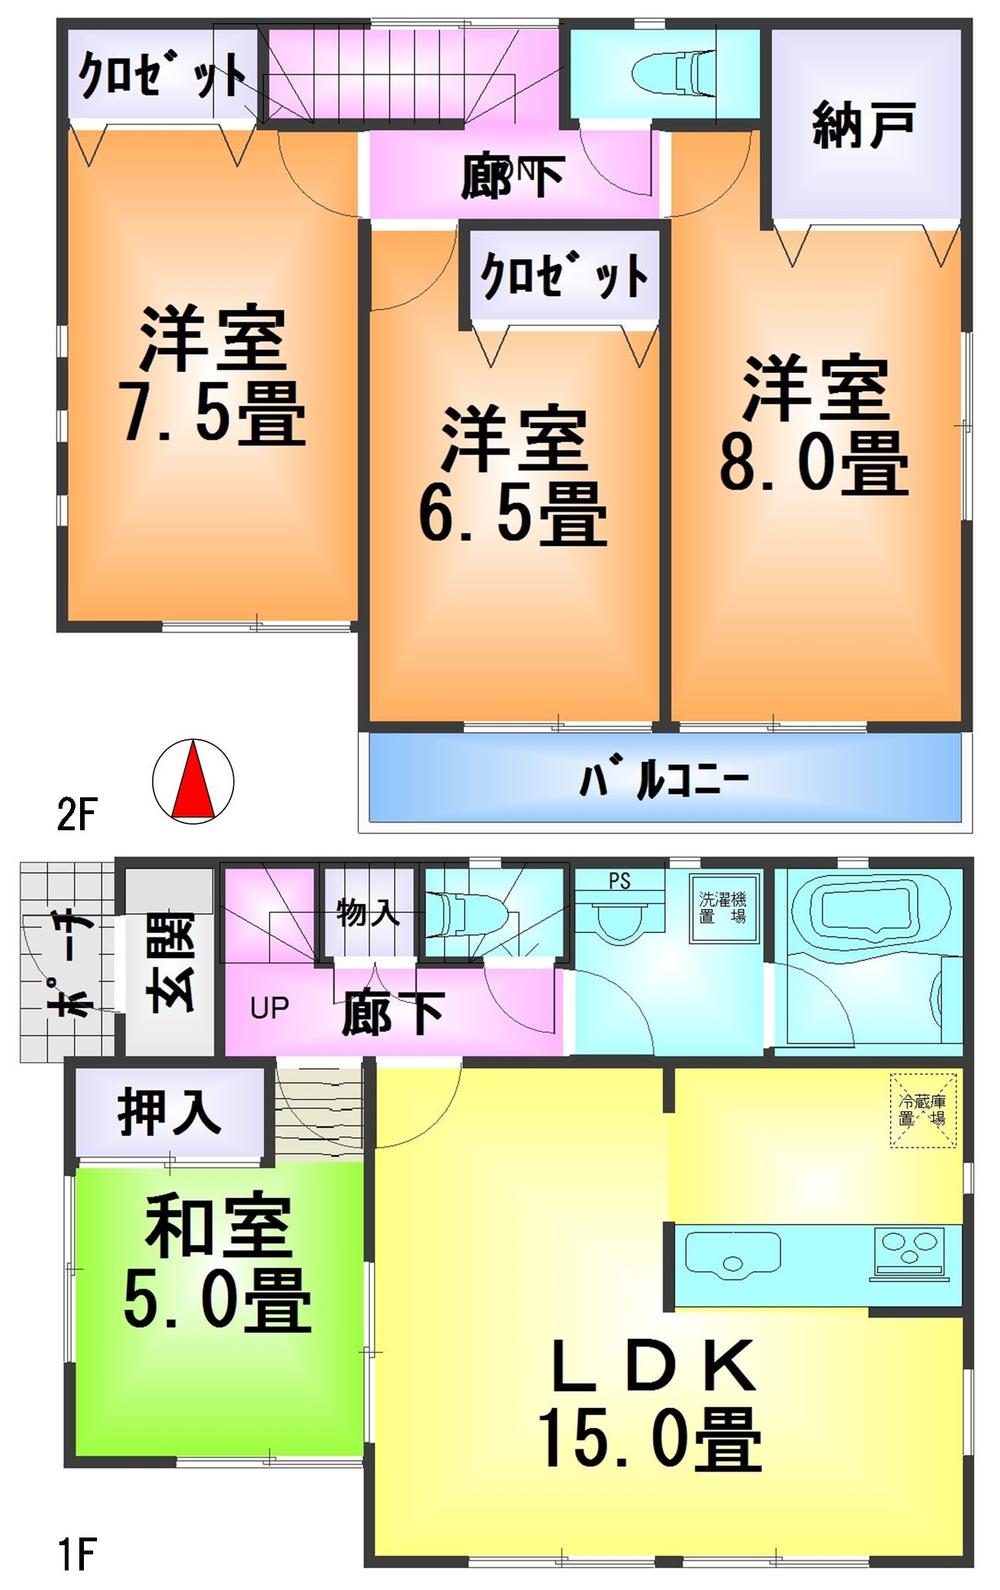 Floor plan. 21,800,000 yen, 4LDK + S (storeroom), Land area 139.67 sq m , Building area 95.98 sq m